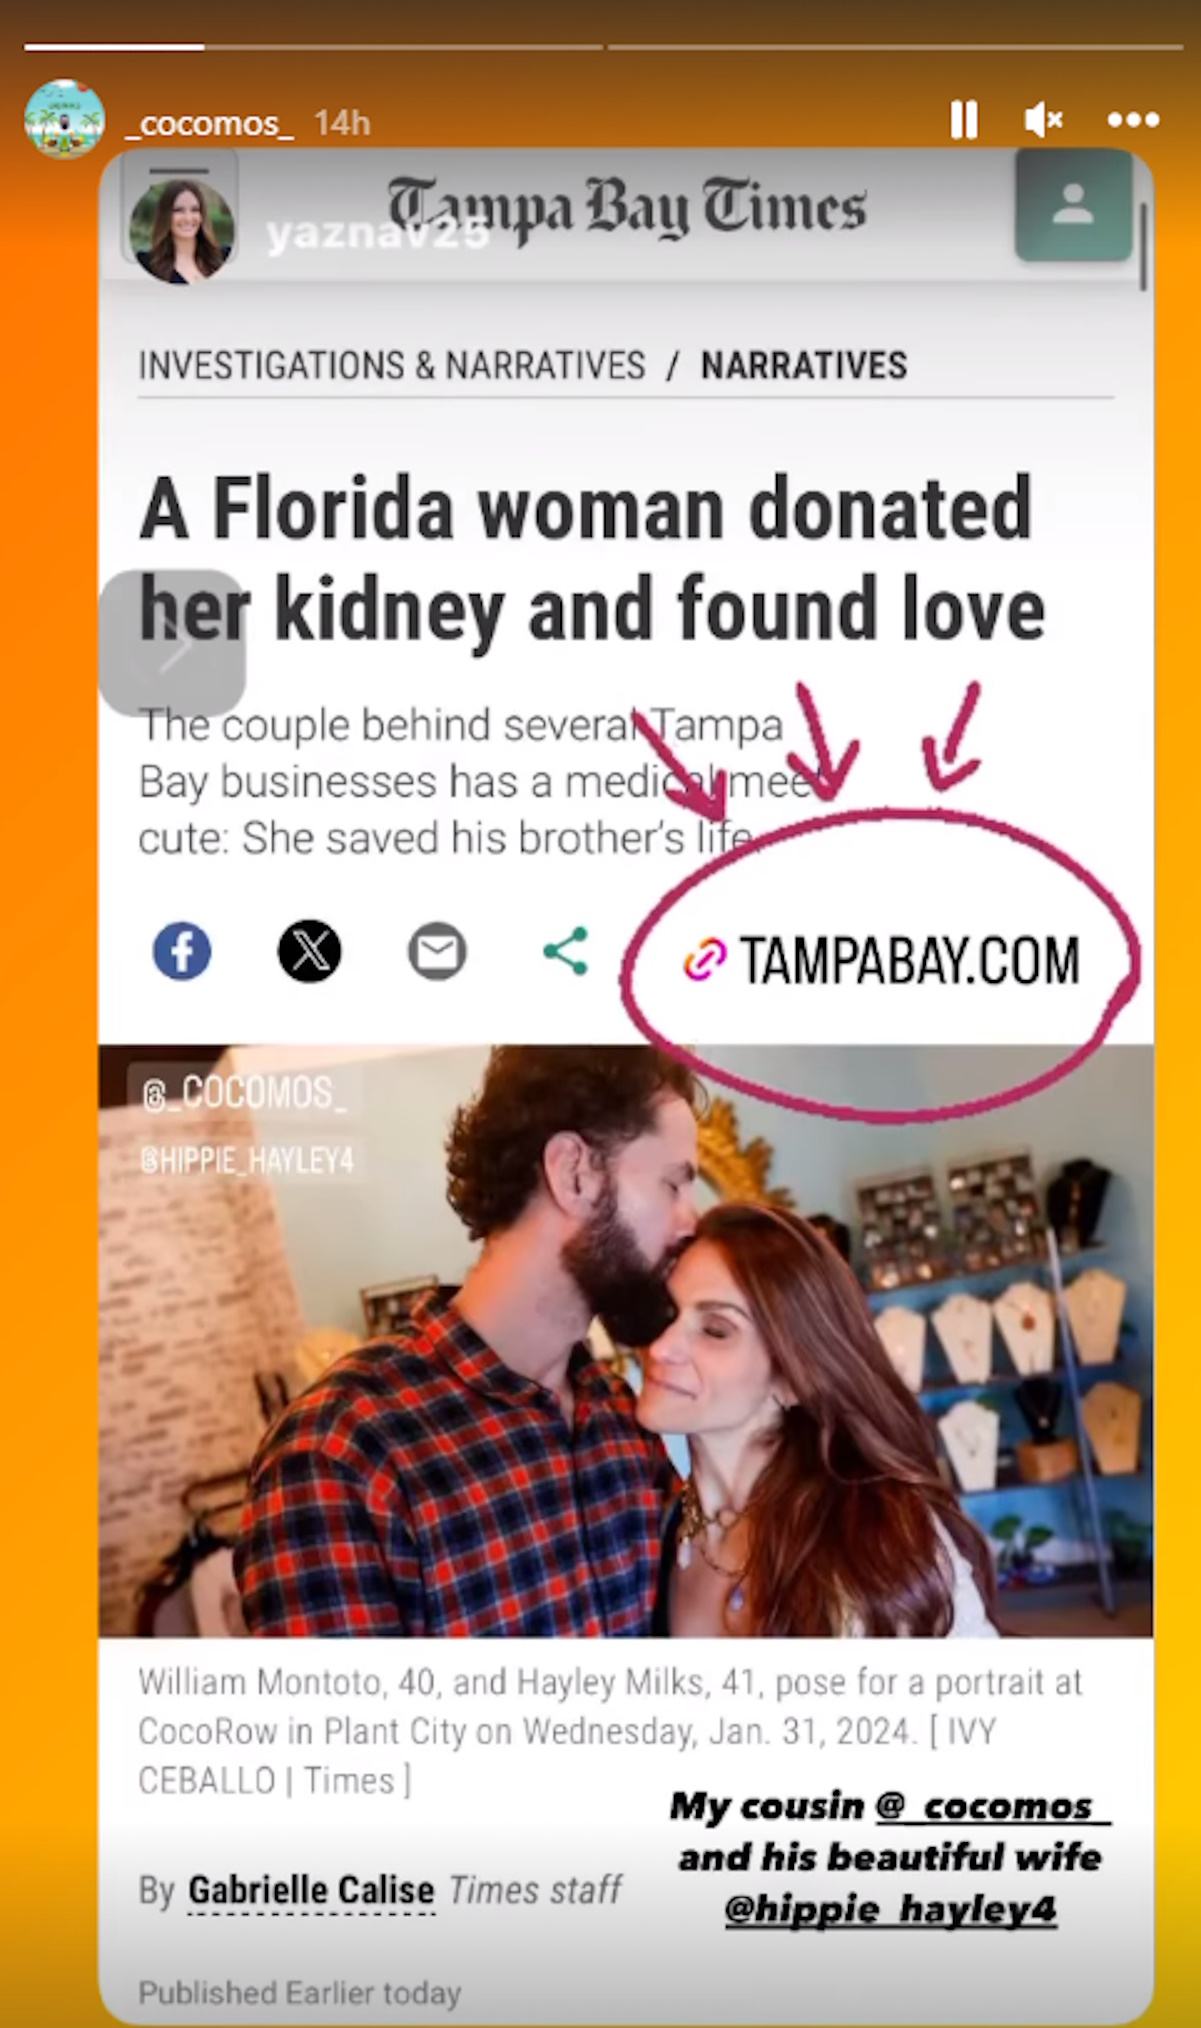 Γυναίκα από τη Φλόριντα δώρισε το νεφρό της σε άγνωστο και βρήκε την αγάπη (ΦΩΤΟ)